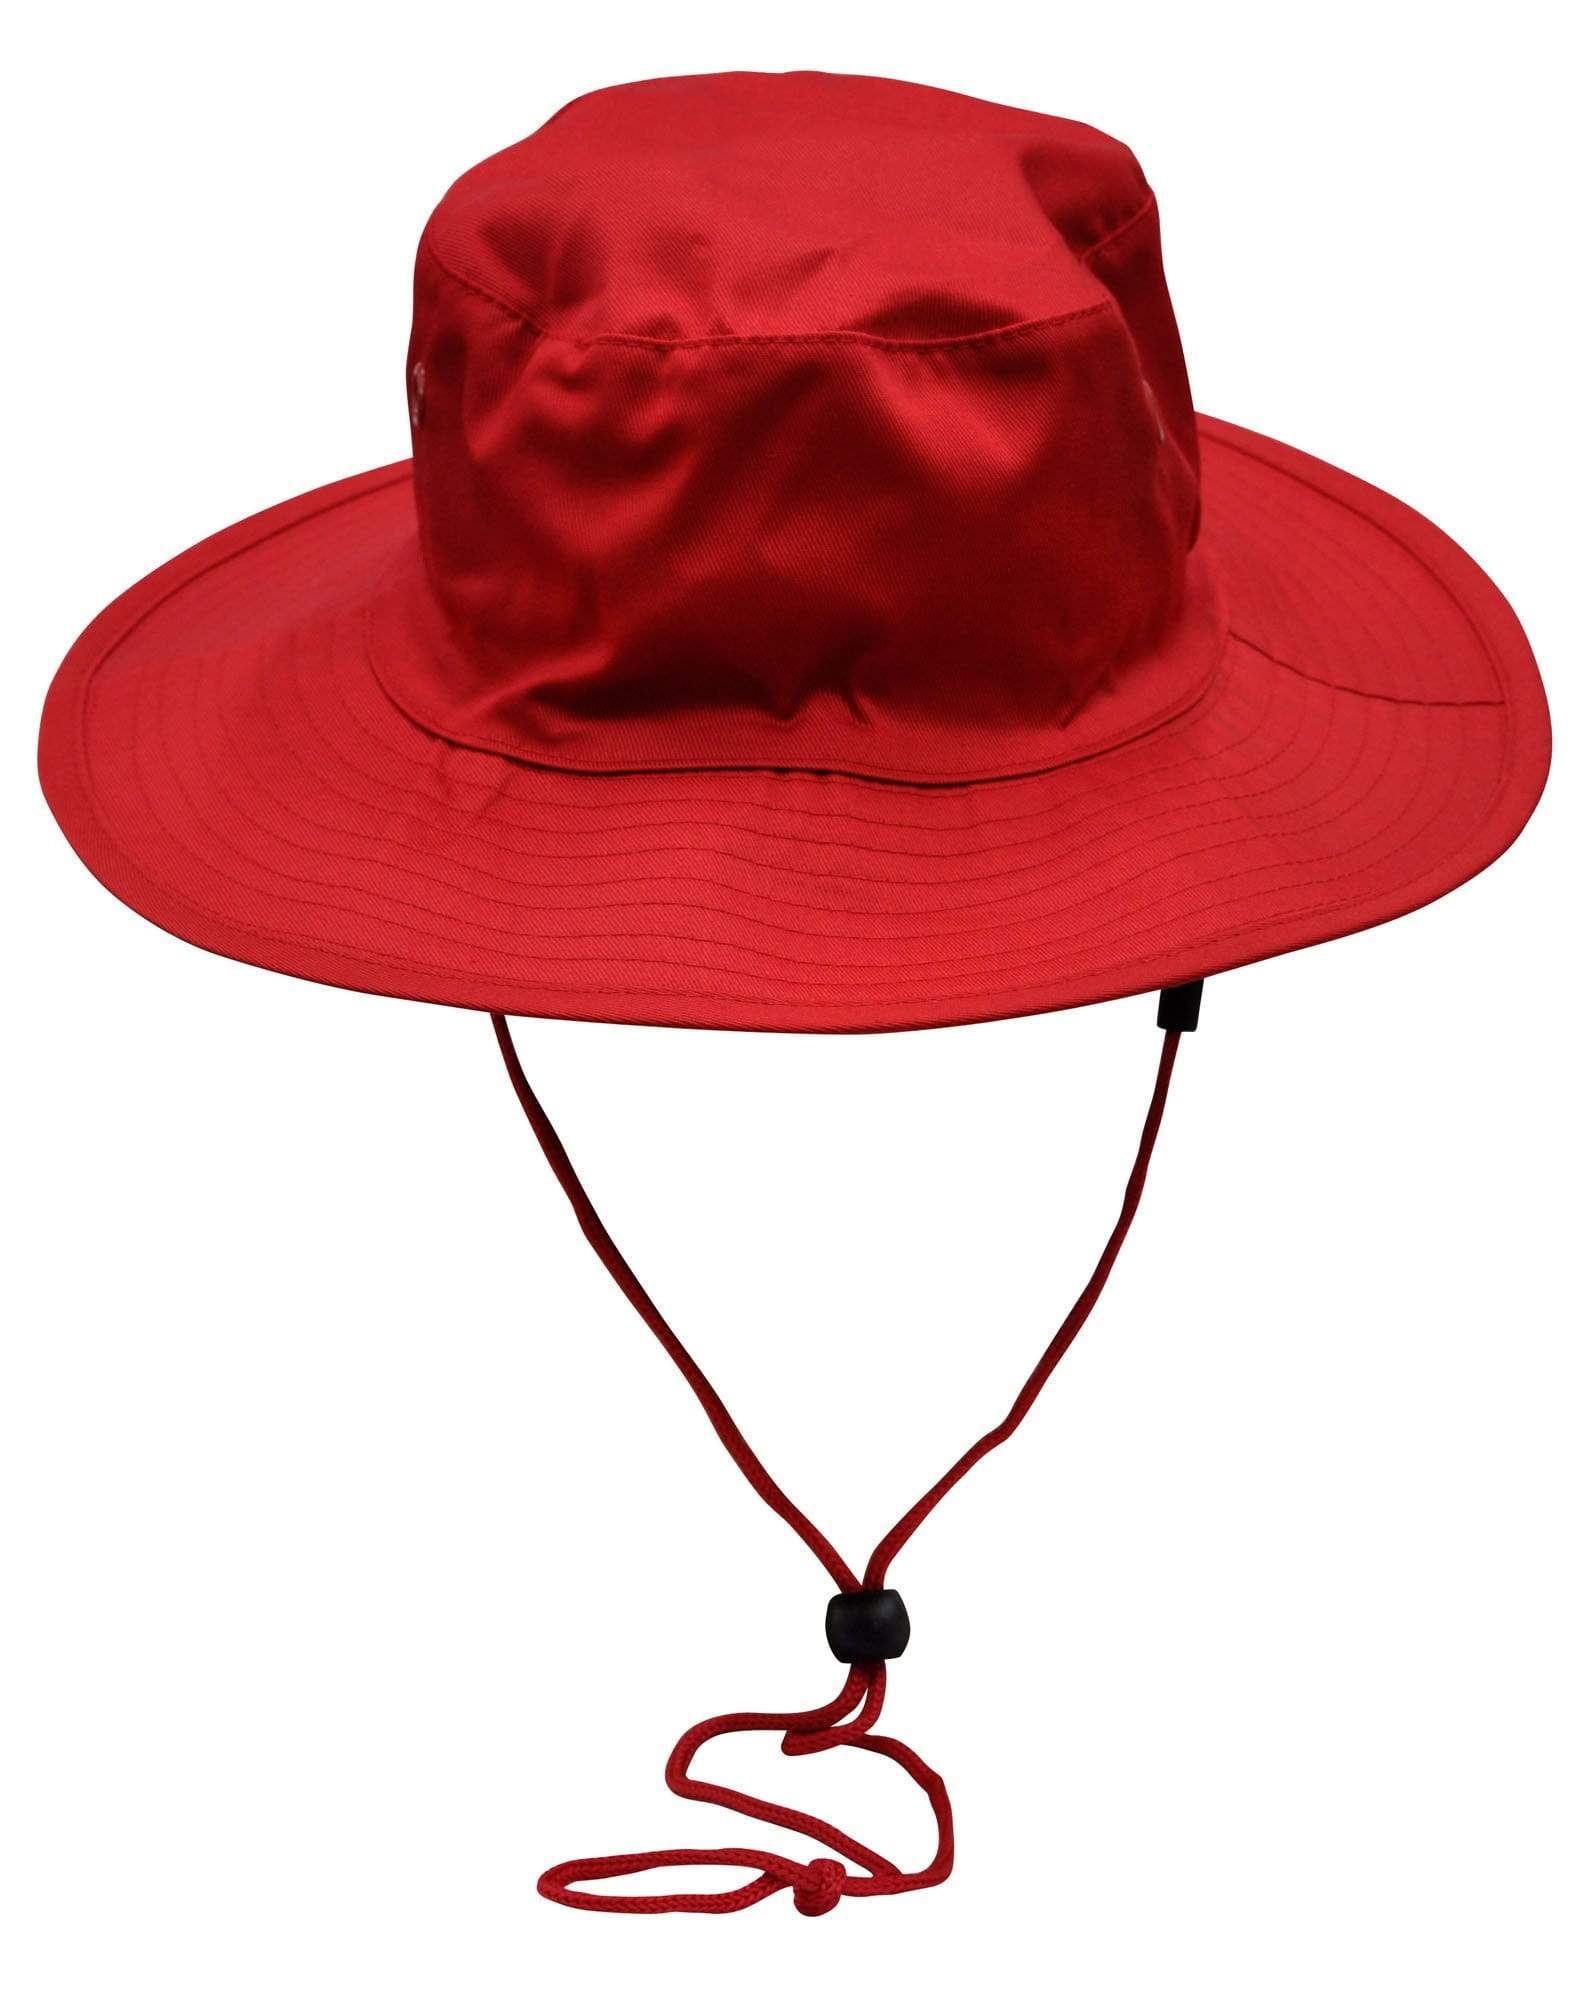 Surf Hat With Break-away Strap H1035 Active Wear Winning Spirit Red S 